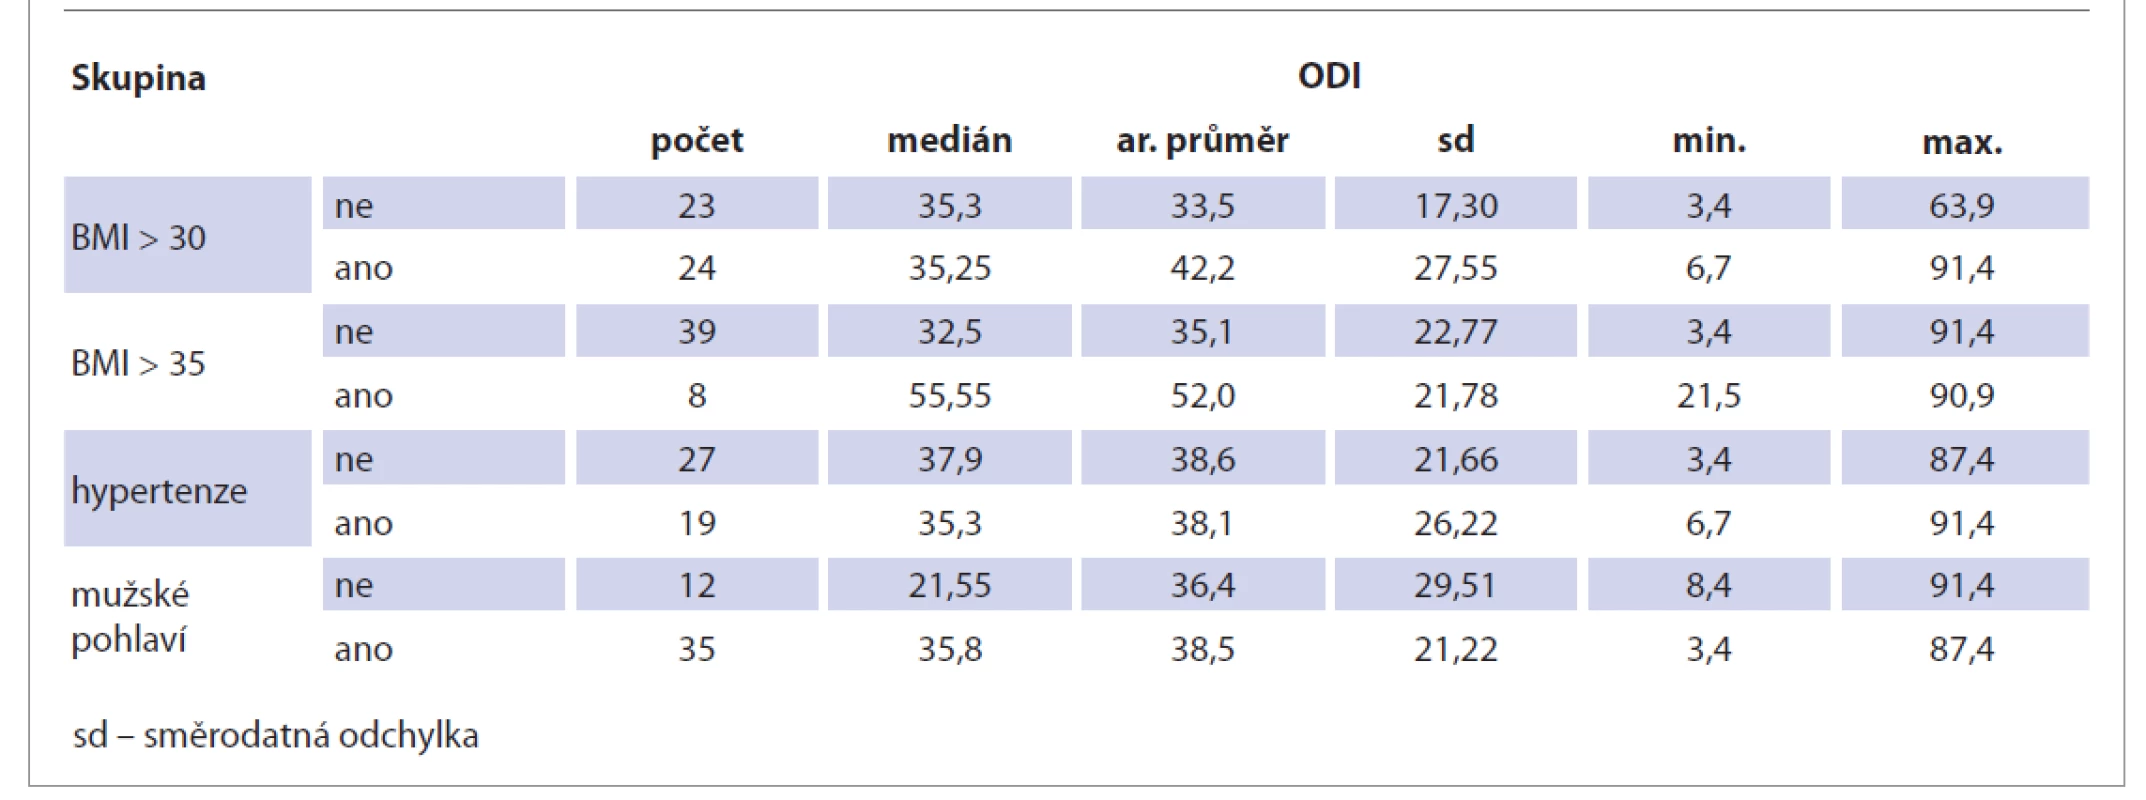 Porovnání ODI s výskytem BMI nad 30, BMI nad 35, hypertenze a mužského pohlaví.<br>
Tab. 6. Comparison of ODI with the incidence of BMI over 30, BMI over 35, hypertension and male gender.